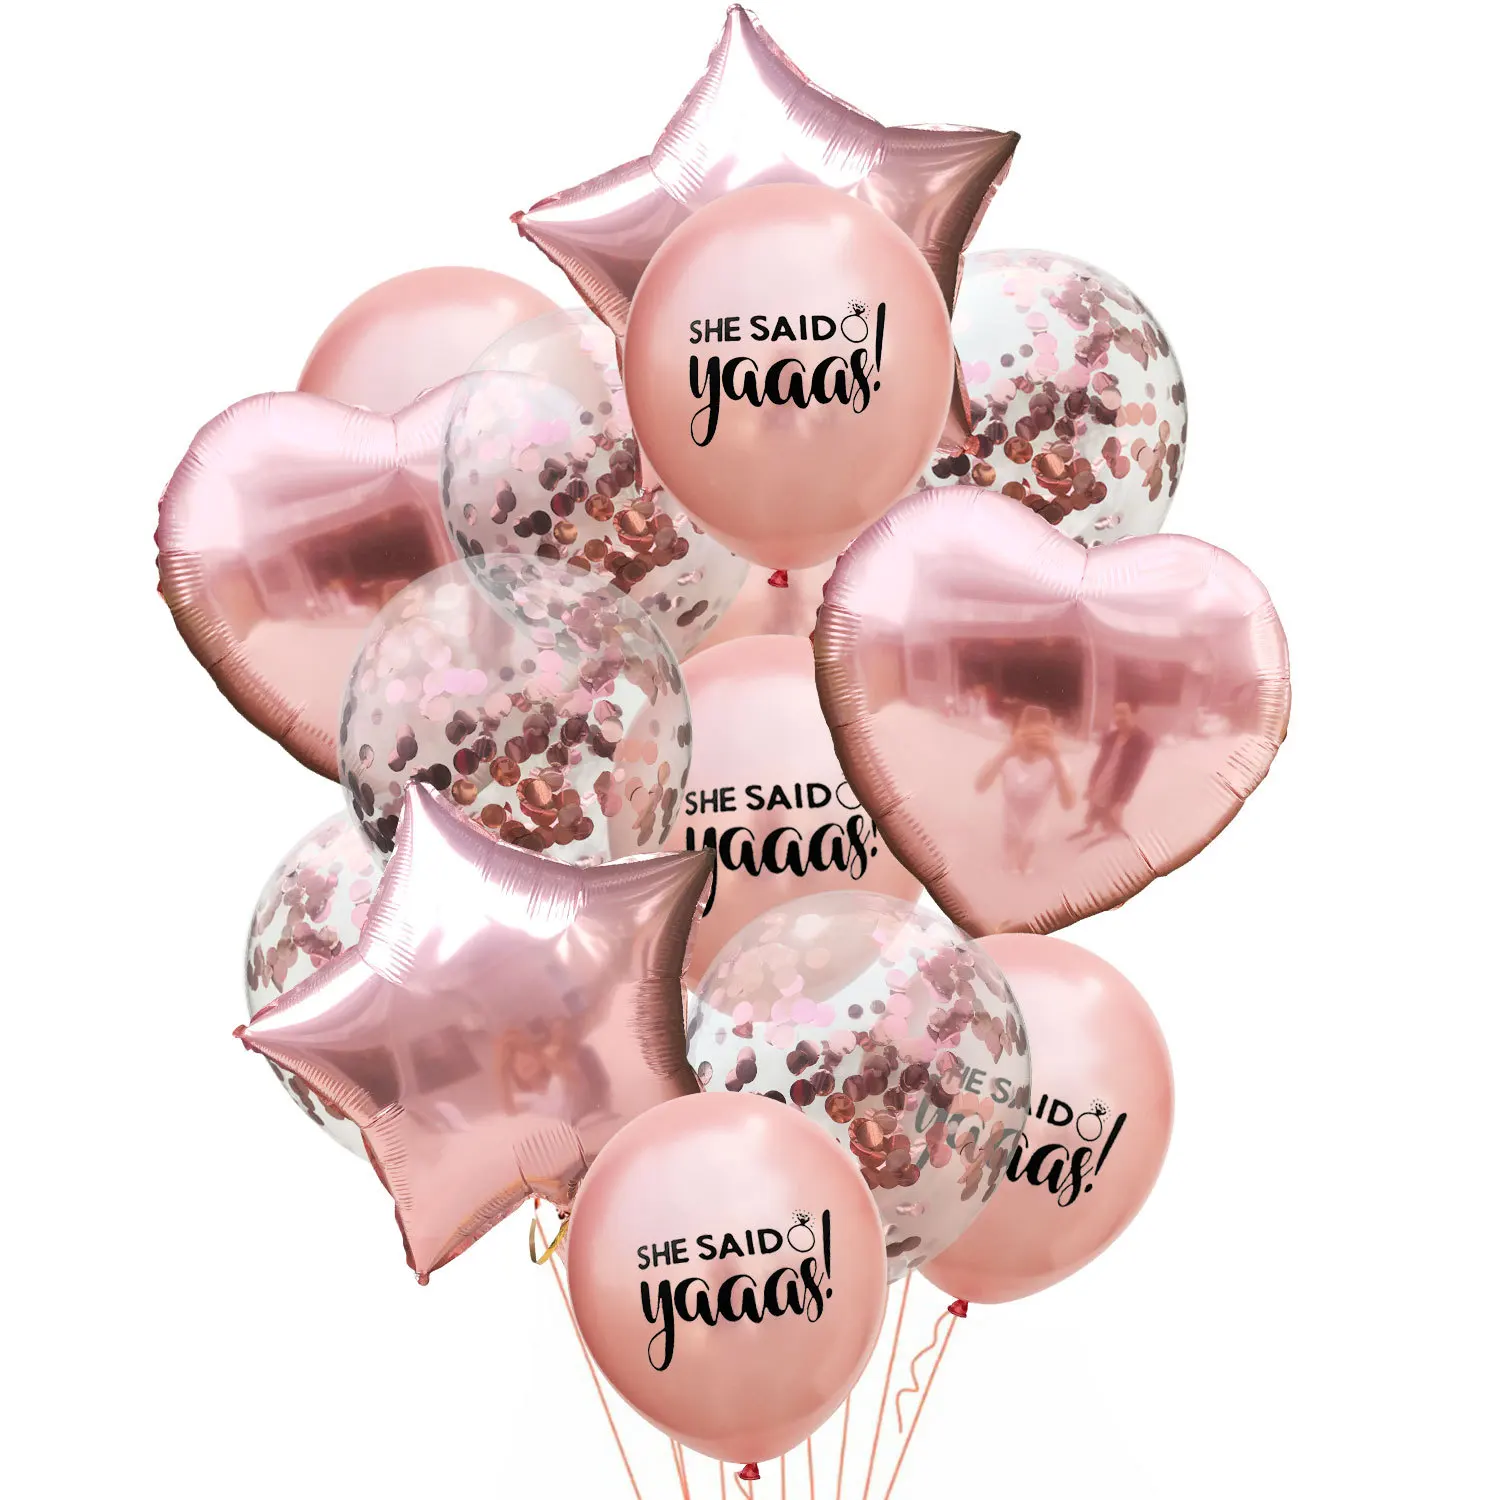 14 шт./лот 12 дюймов латексные разноцветные смешанные воздушные шары с конфетти надувной шар Гелиевый шар для дня рождения, свадьбы